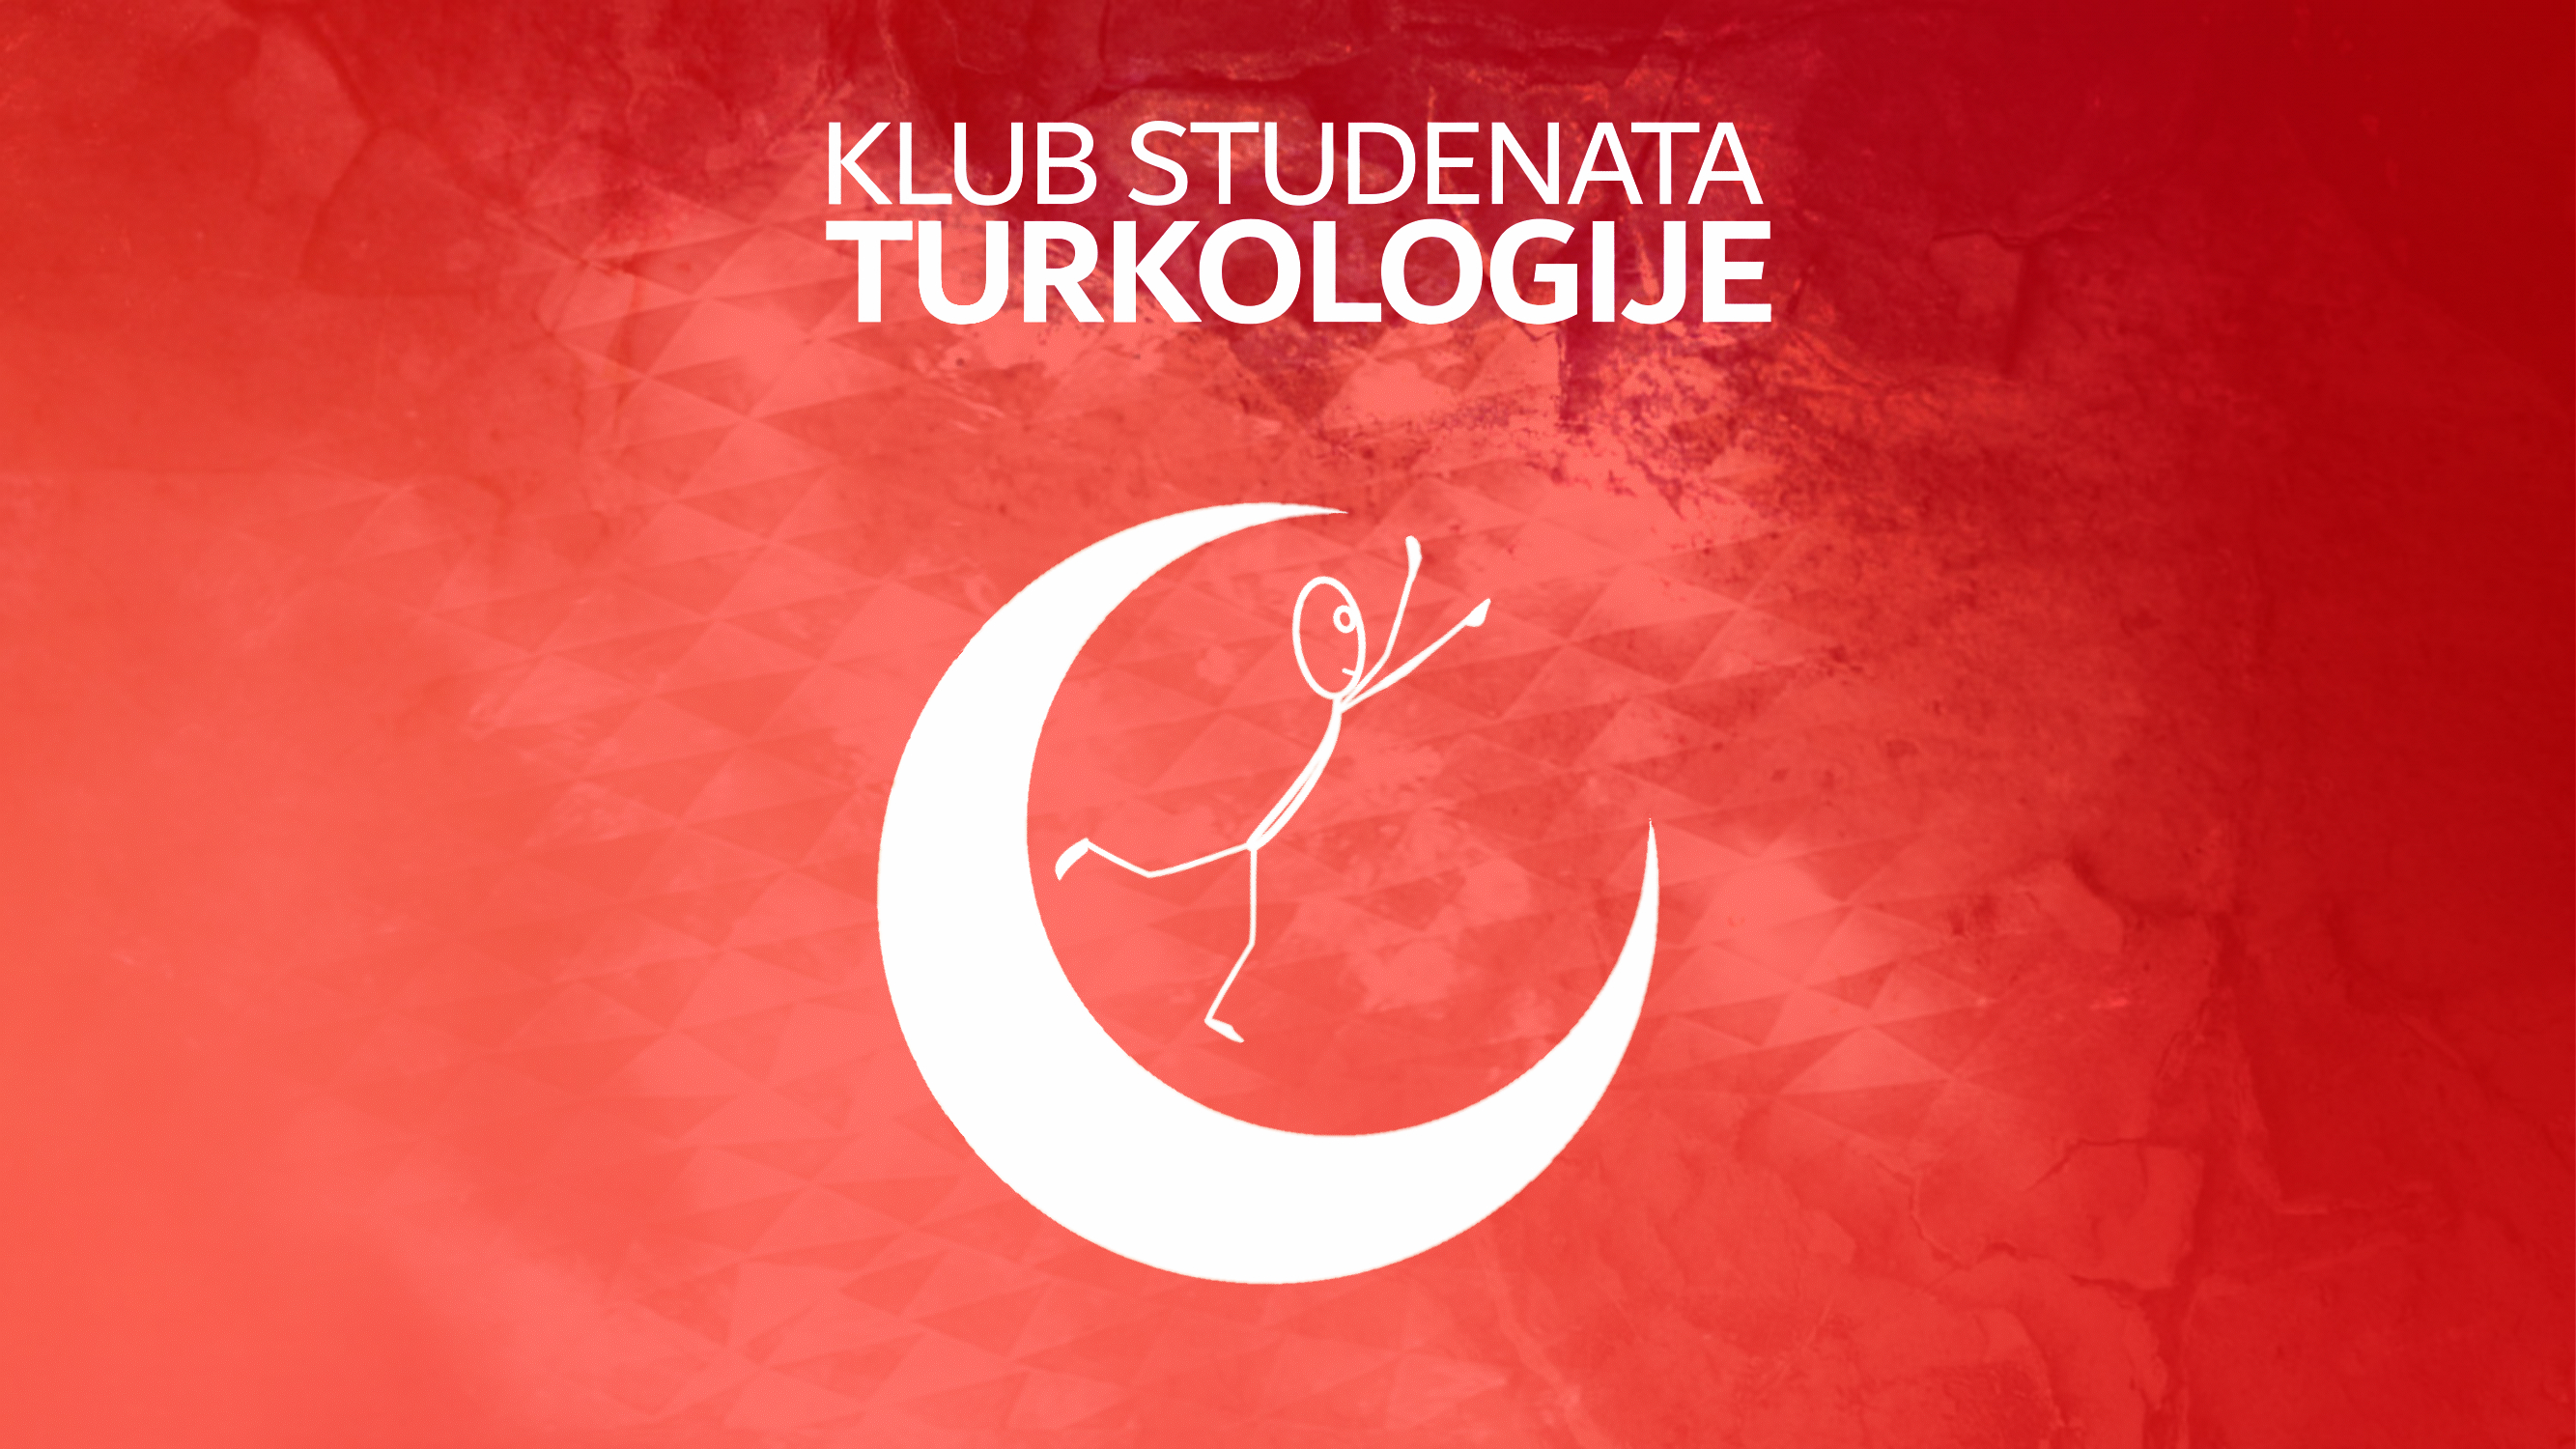 Poziv za prijavu na regionalnu studentsku konferenciju „Mladi turkolozi“